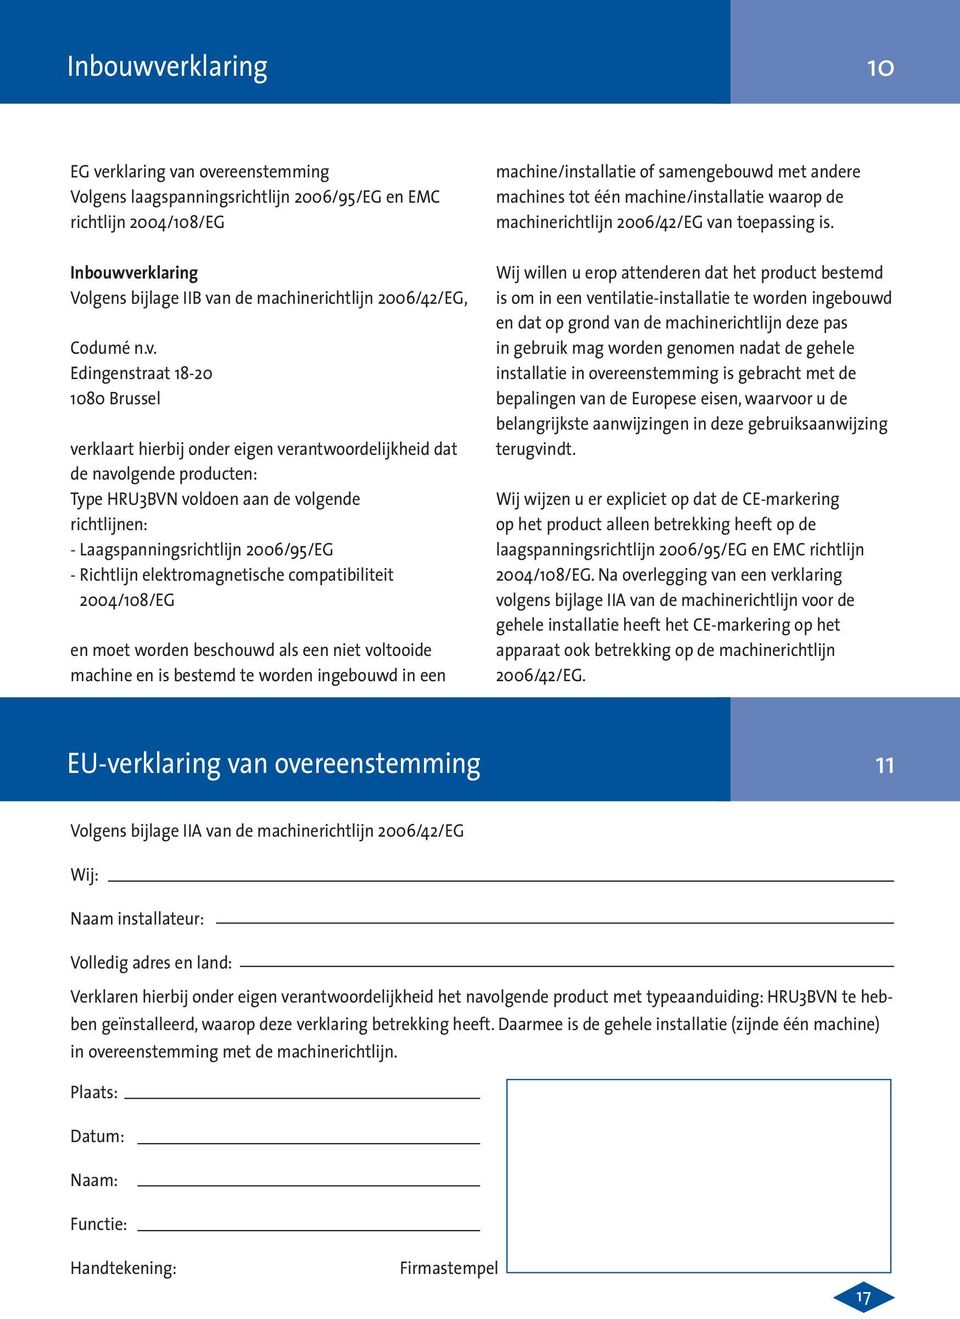 Edingenstraat 18-20 1080 Brussel verklaart hierbij onder eigen verantwoordelijkheid dat de navolgende producten: Type HRU3BVN voldoen aan de volgende richtlijnen: - Laagspanningsrichtlijn 2006/95/EG